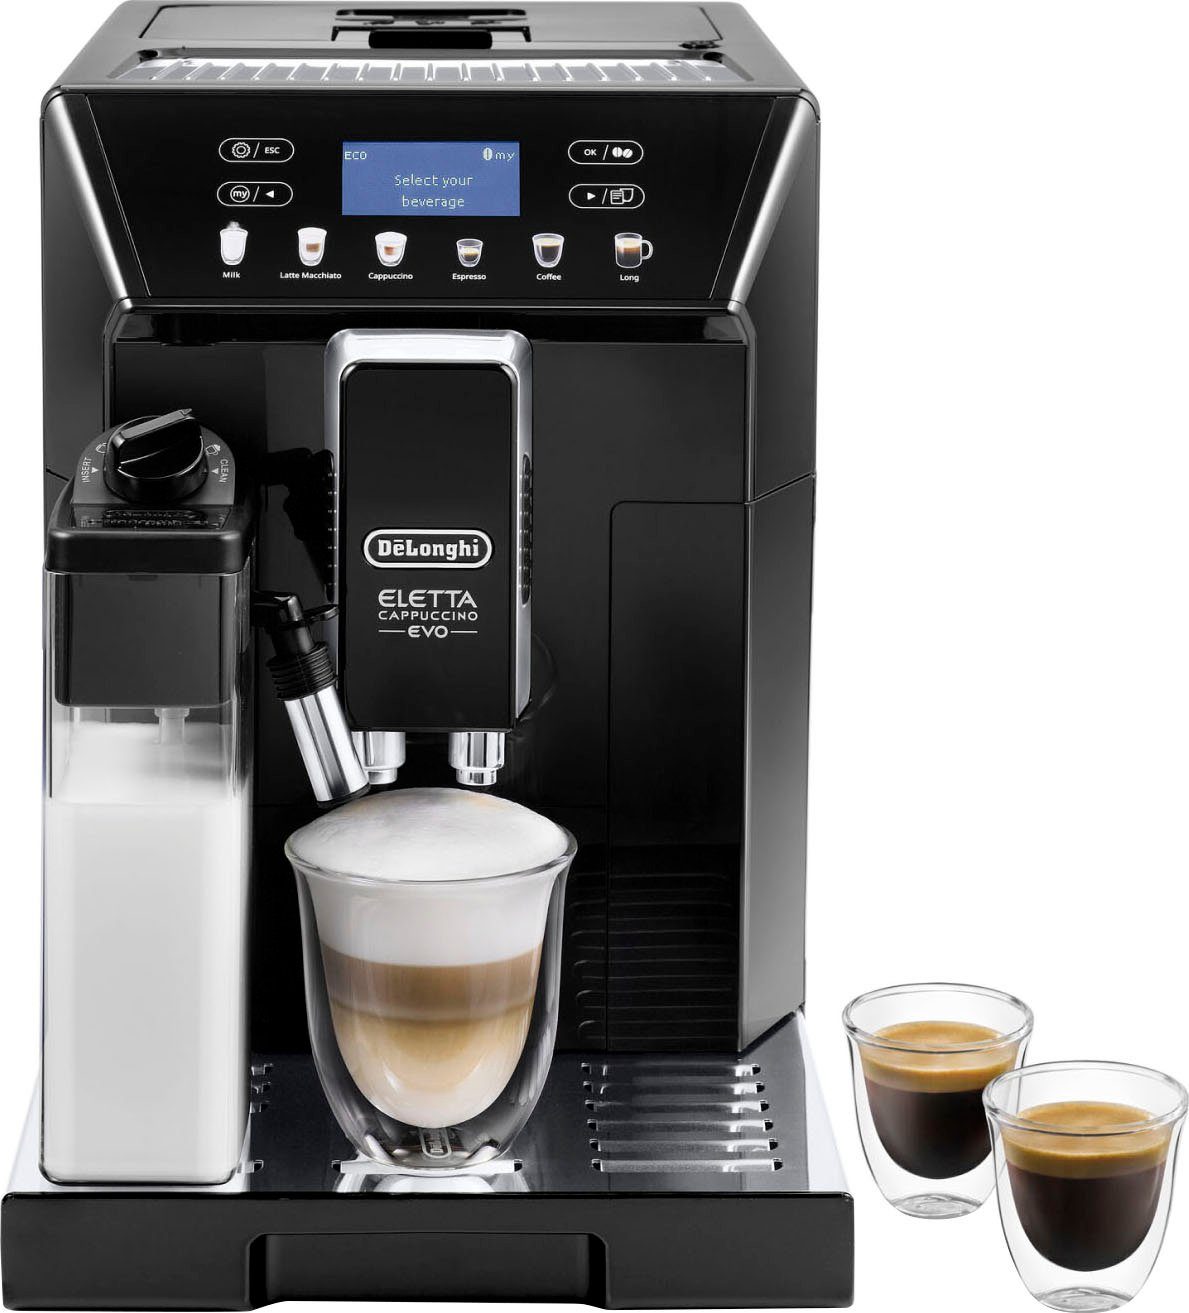 De'Longhi Kaffeevollautomat ECAM 46.860.B € inkl. UVP Evo, schwarz, im von 31,99 Eletta Pflegeset Wert